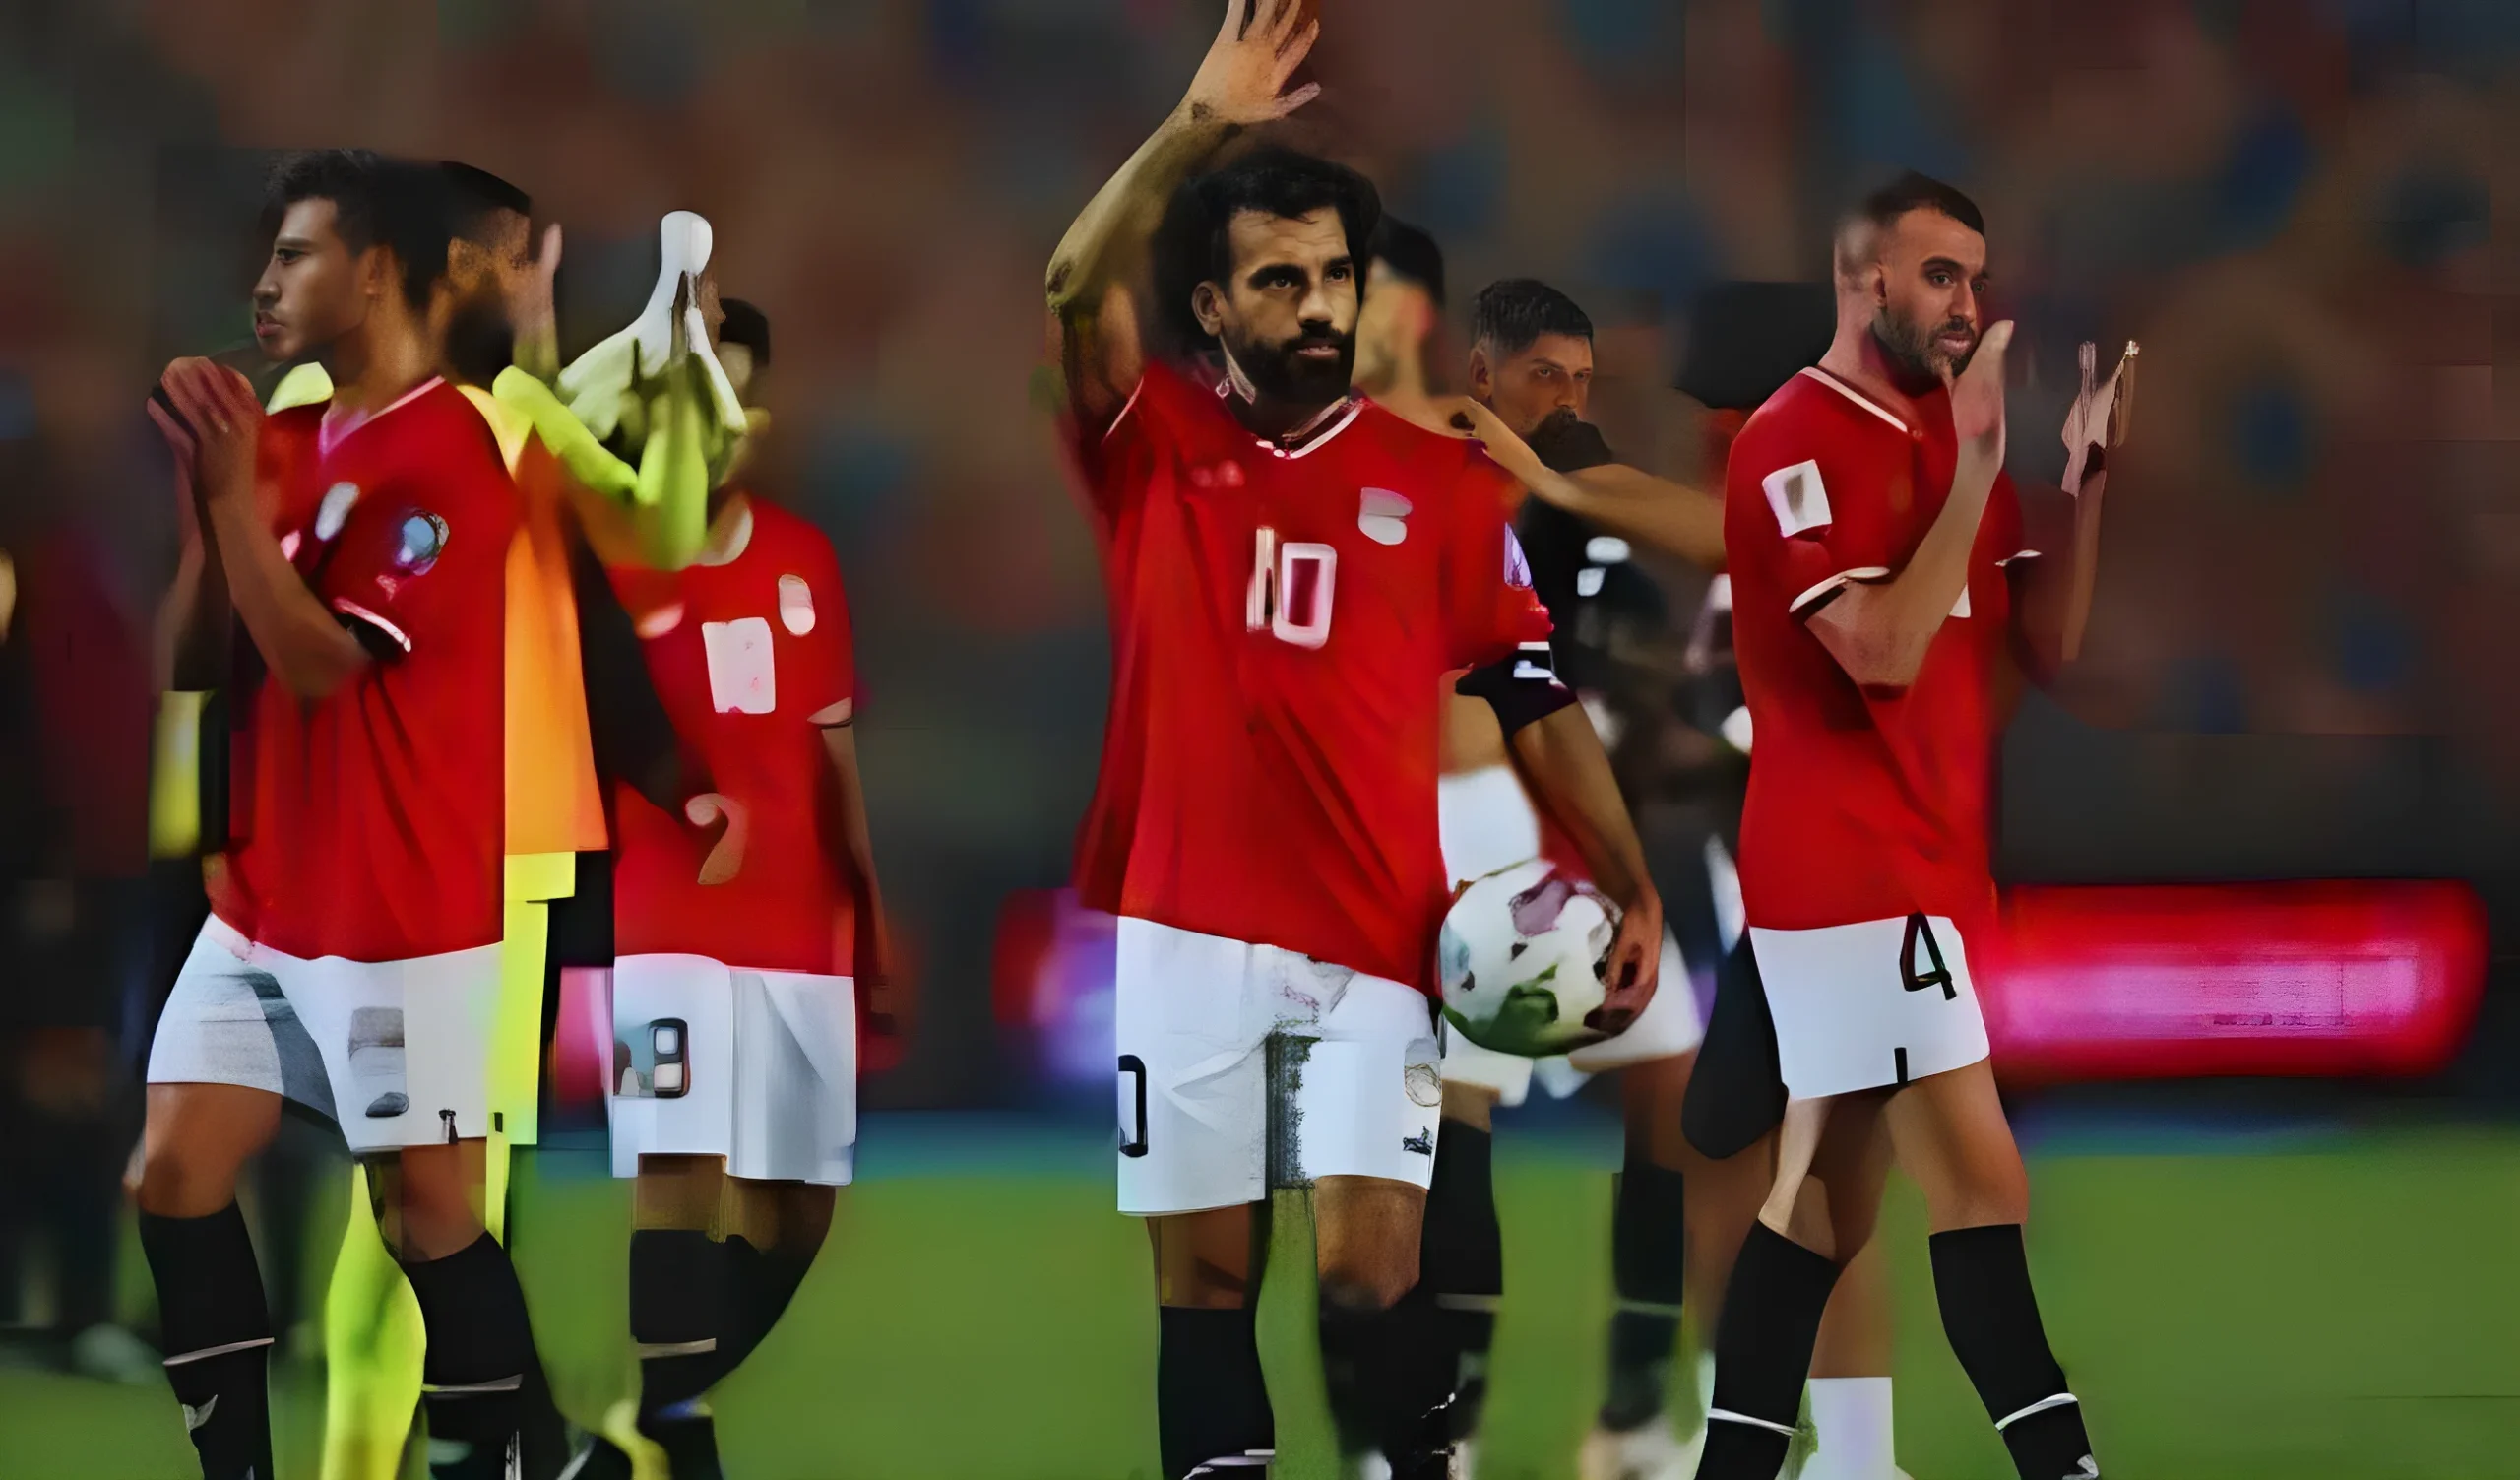 منتخب مصر، قائمة أسماء المنتخب المشارك في كأس الأمم الأفريقية، والقيمة السوقية للاعبين